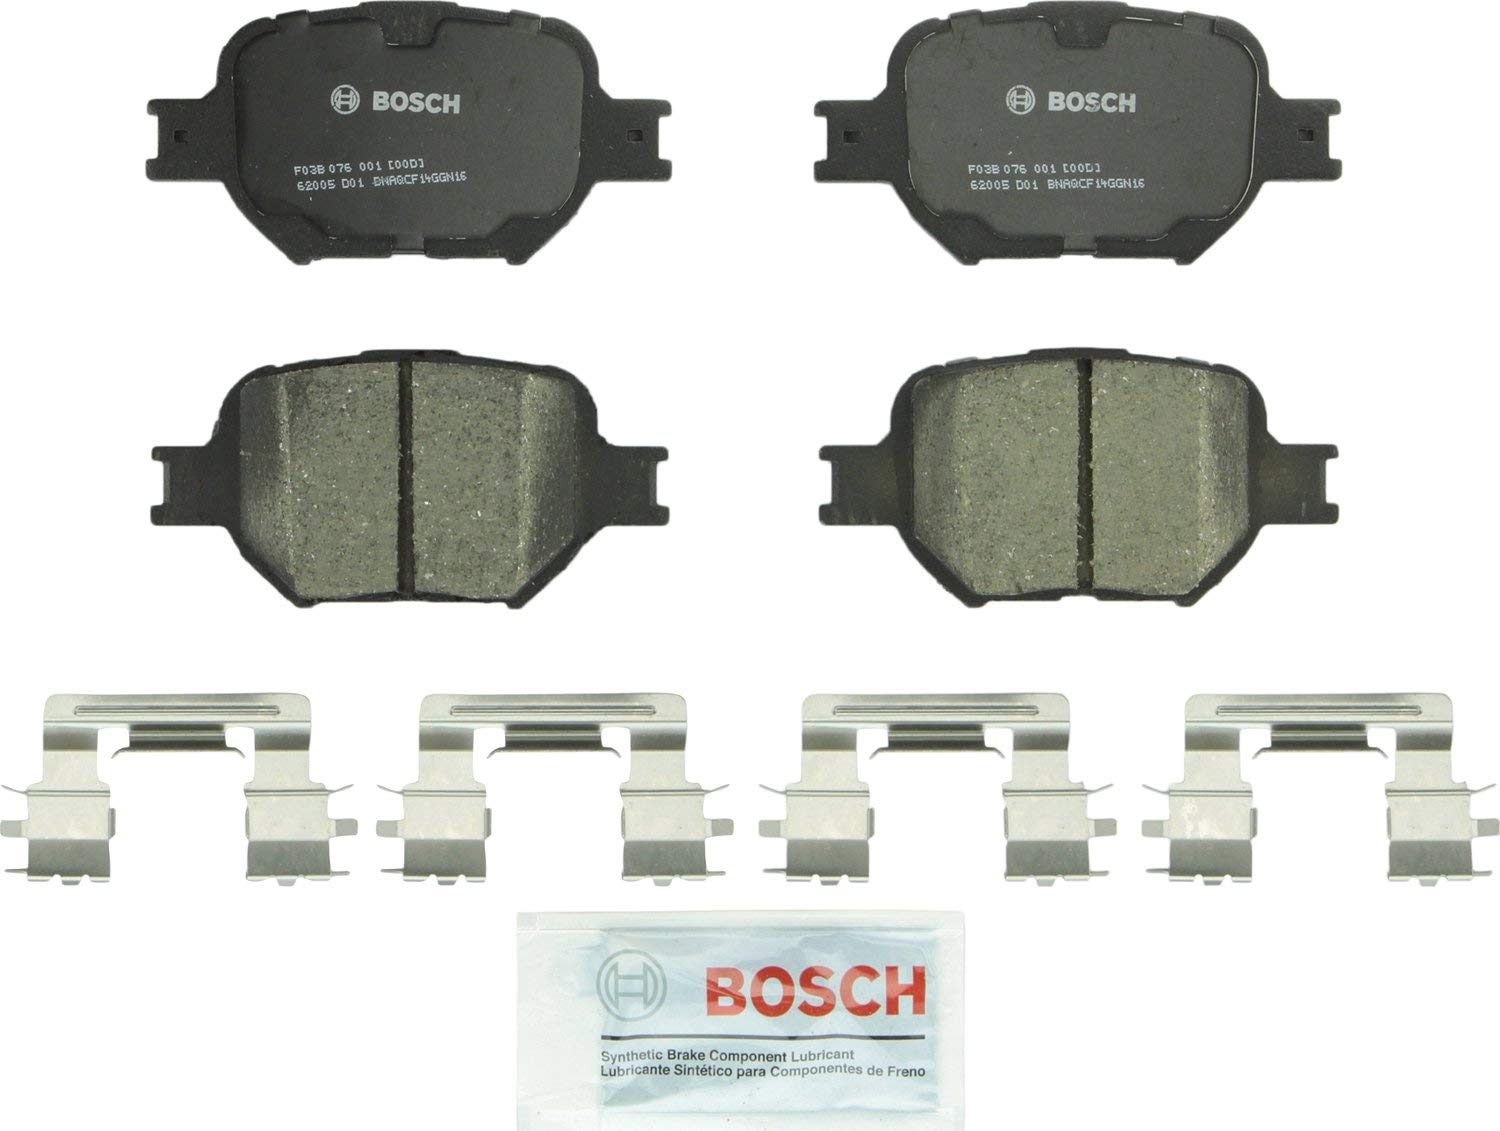 Bosch BC817 QuietCast Premium Ceramic Disc Brake Pad Set For 2005-2010 Scion tC and 2000-2005 Toyota Celica; Front